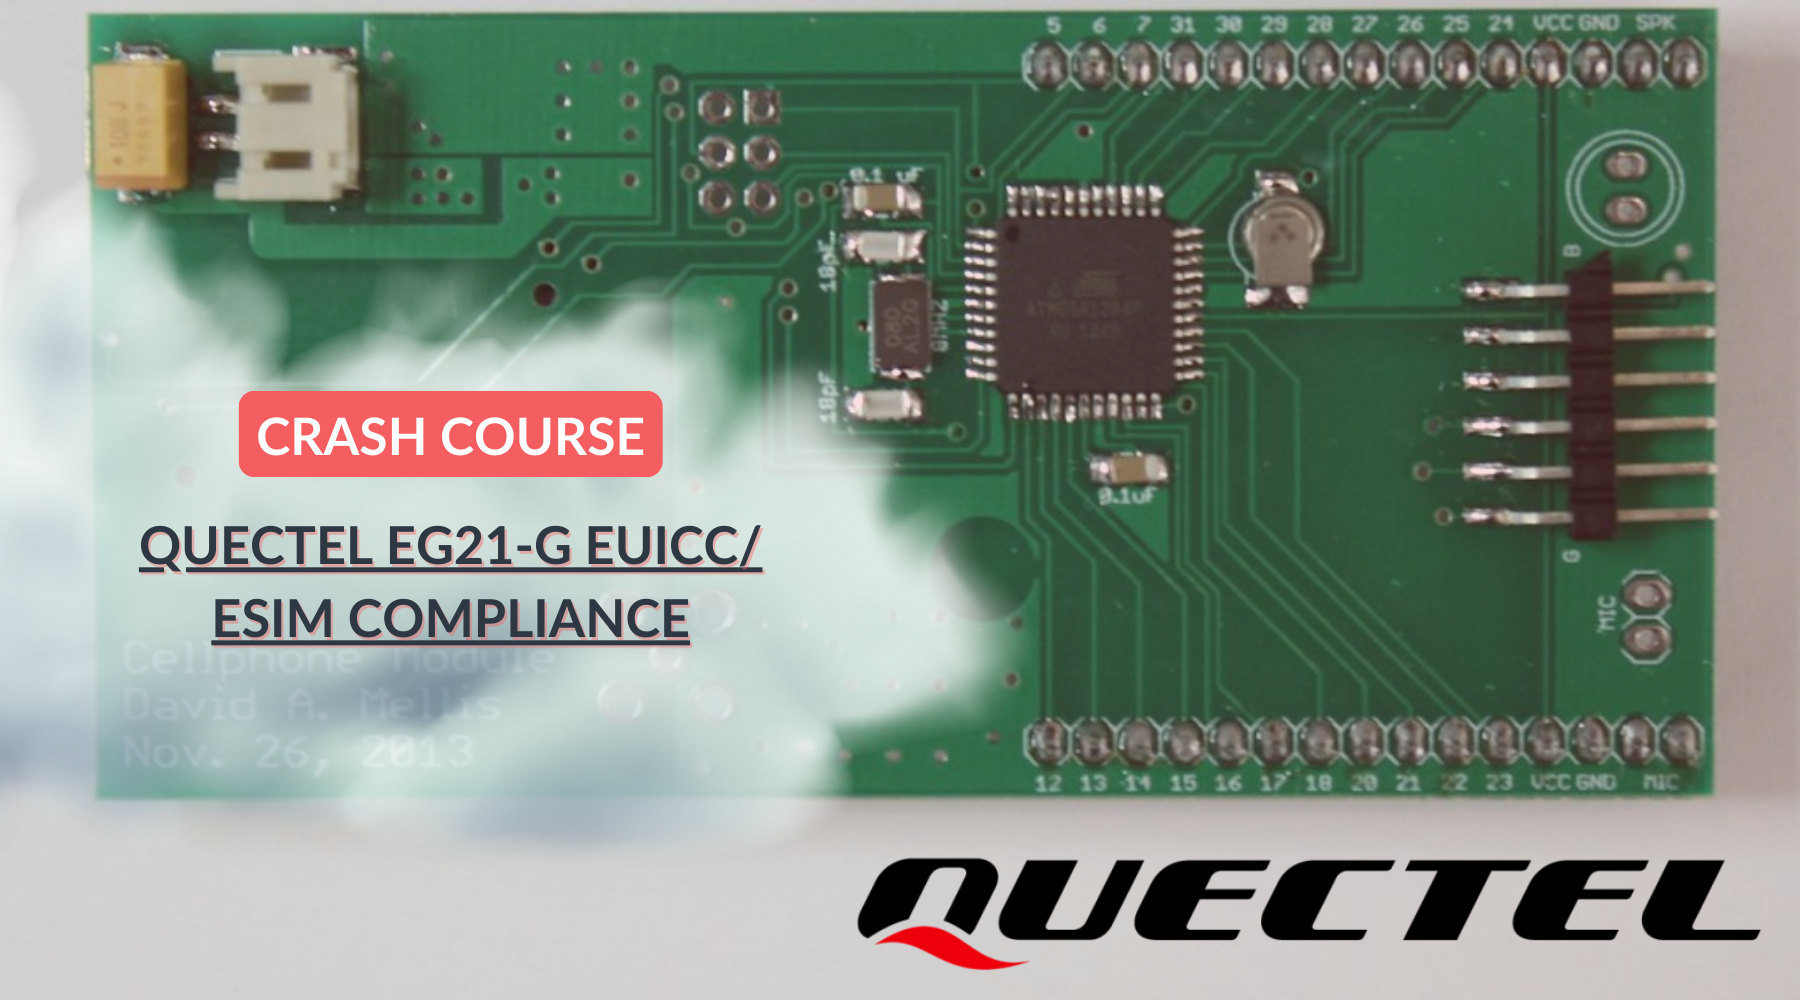 QUECTEL EG21-G EUICC/ ESIM COMPLIANCE with ConnectedYou